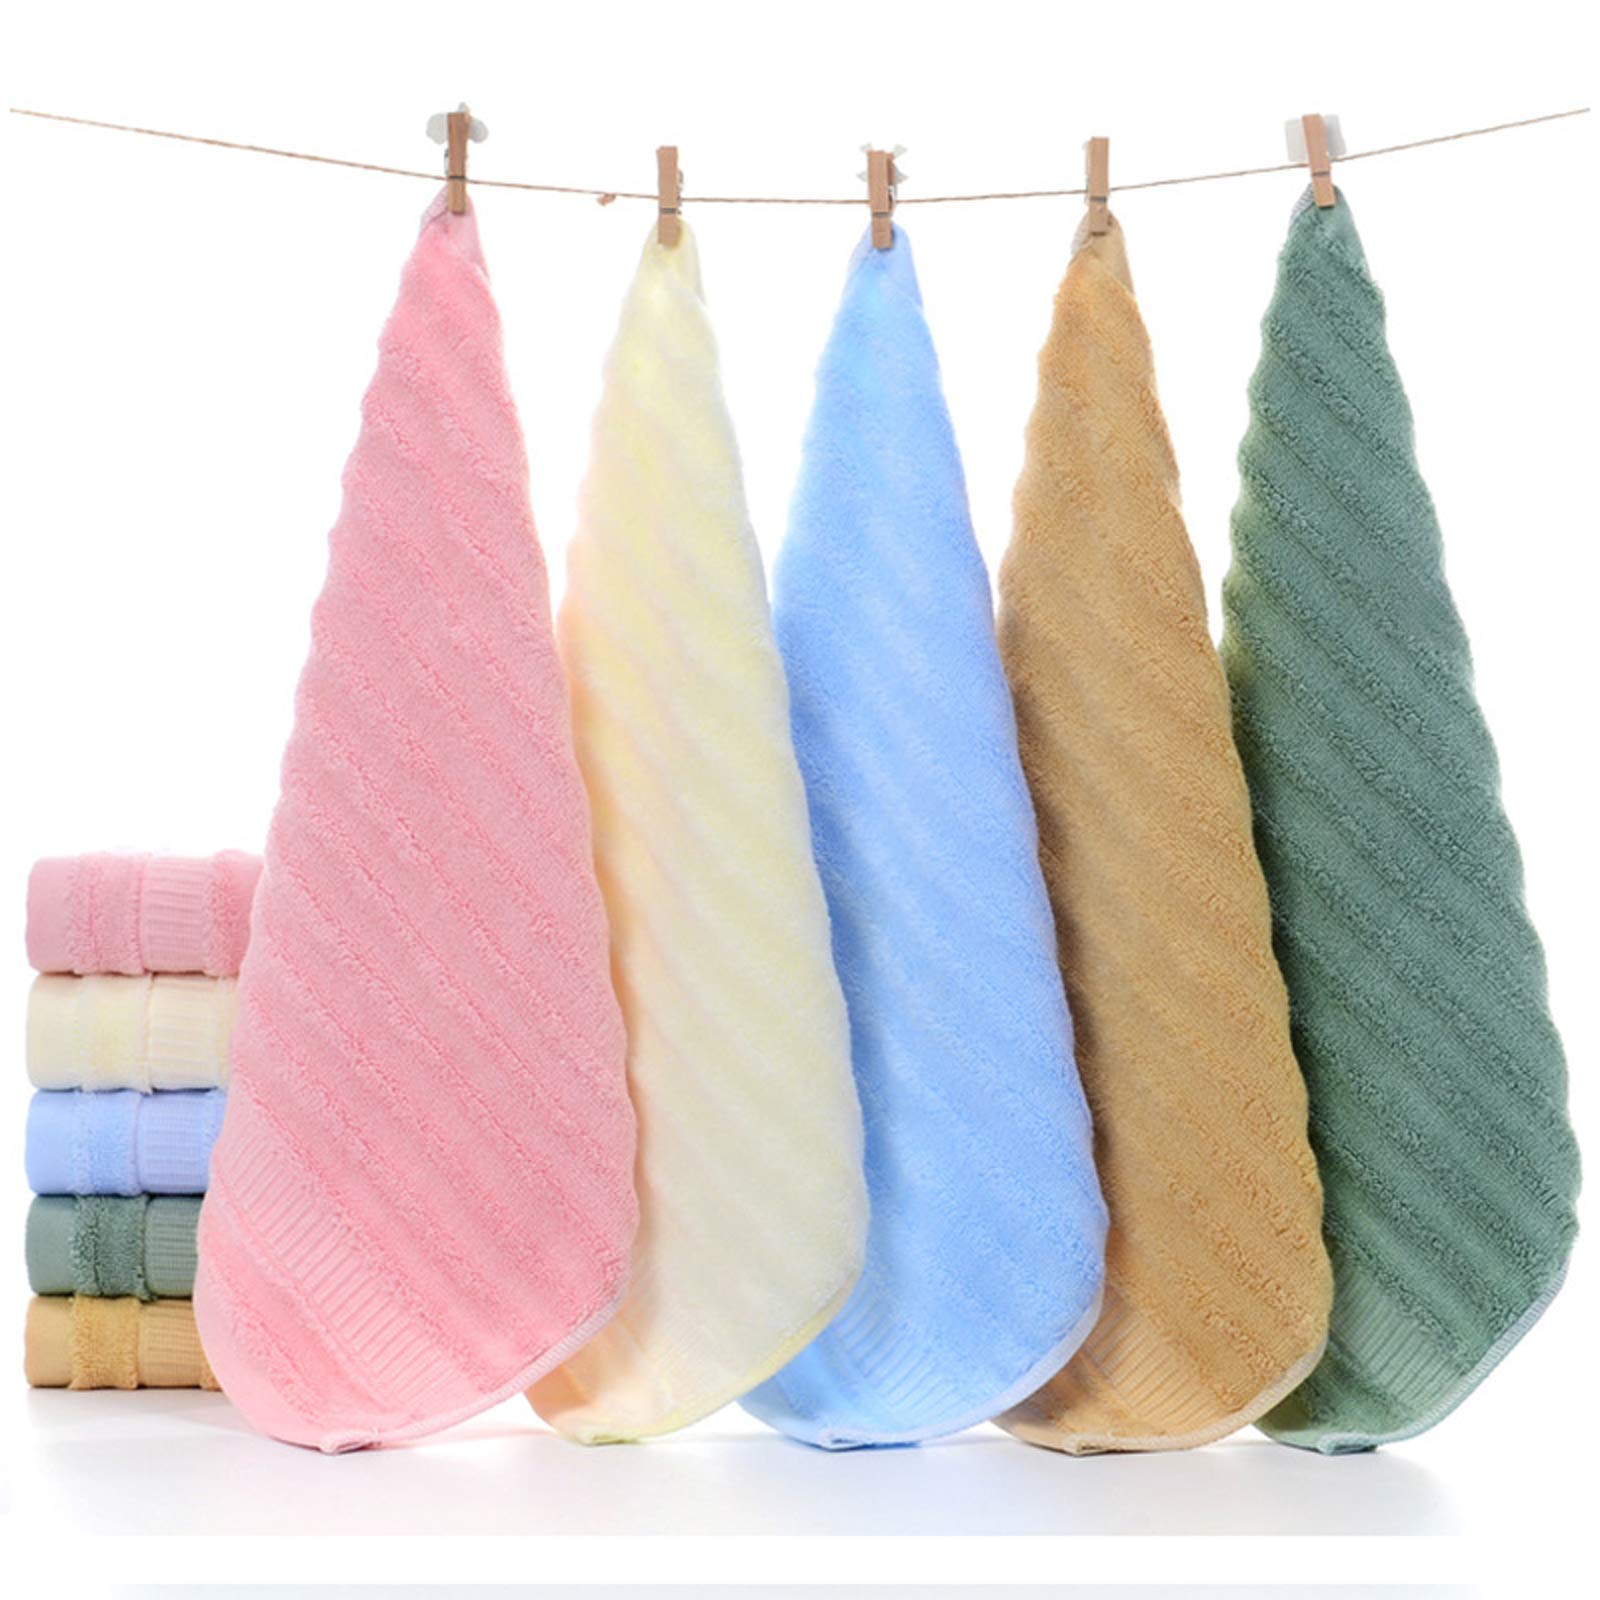 Mush Bamboo Face Towel Multicolor Set of 5, 100% Bamboo